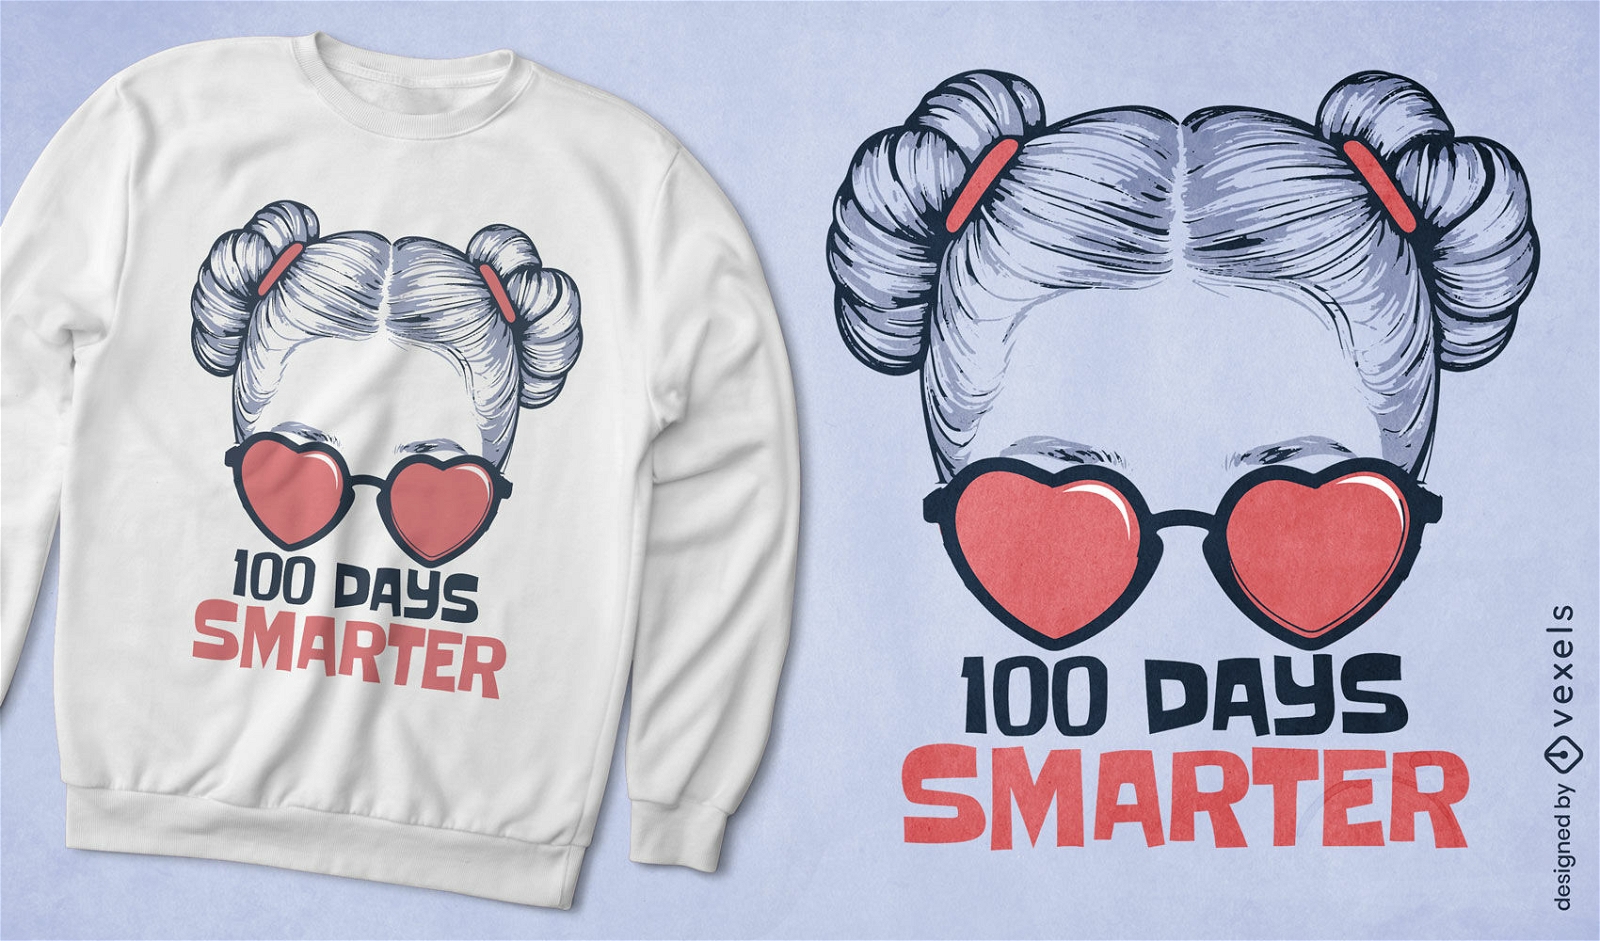 Smart girl educational t-shirt design